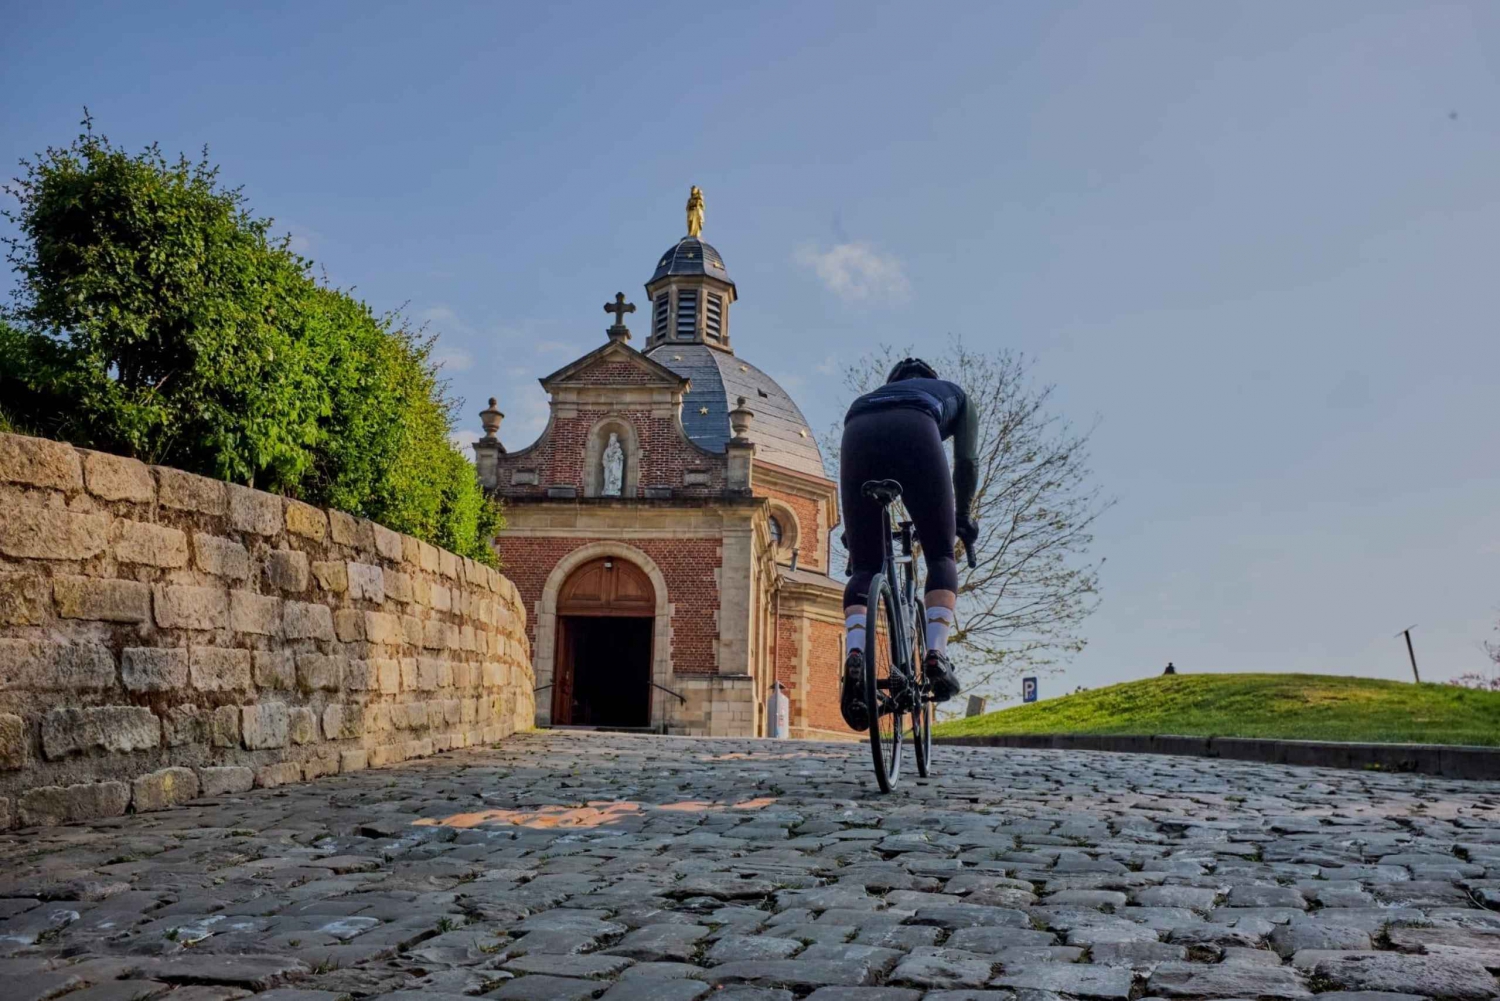 Fra Brussel til Flandern - en 100 km lang landeveissykletur